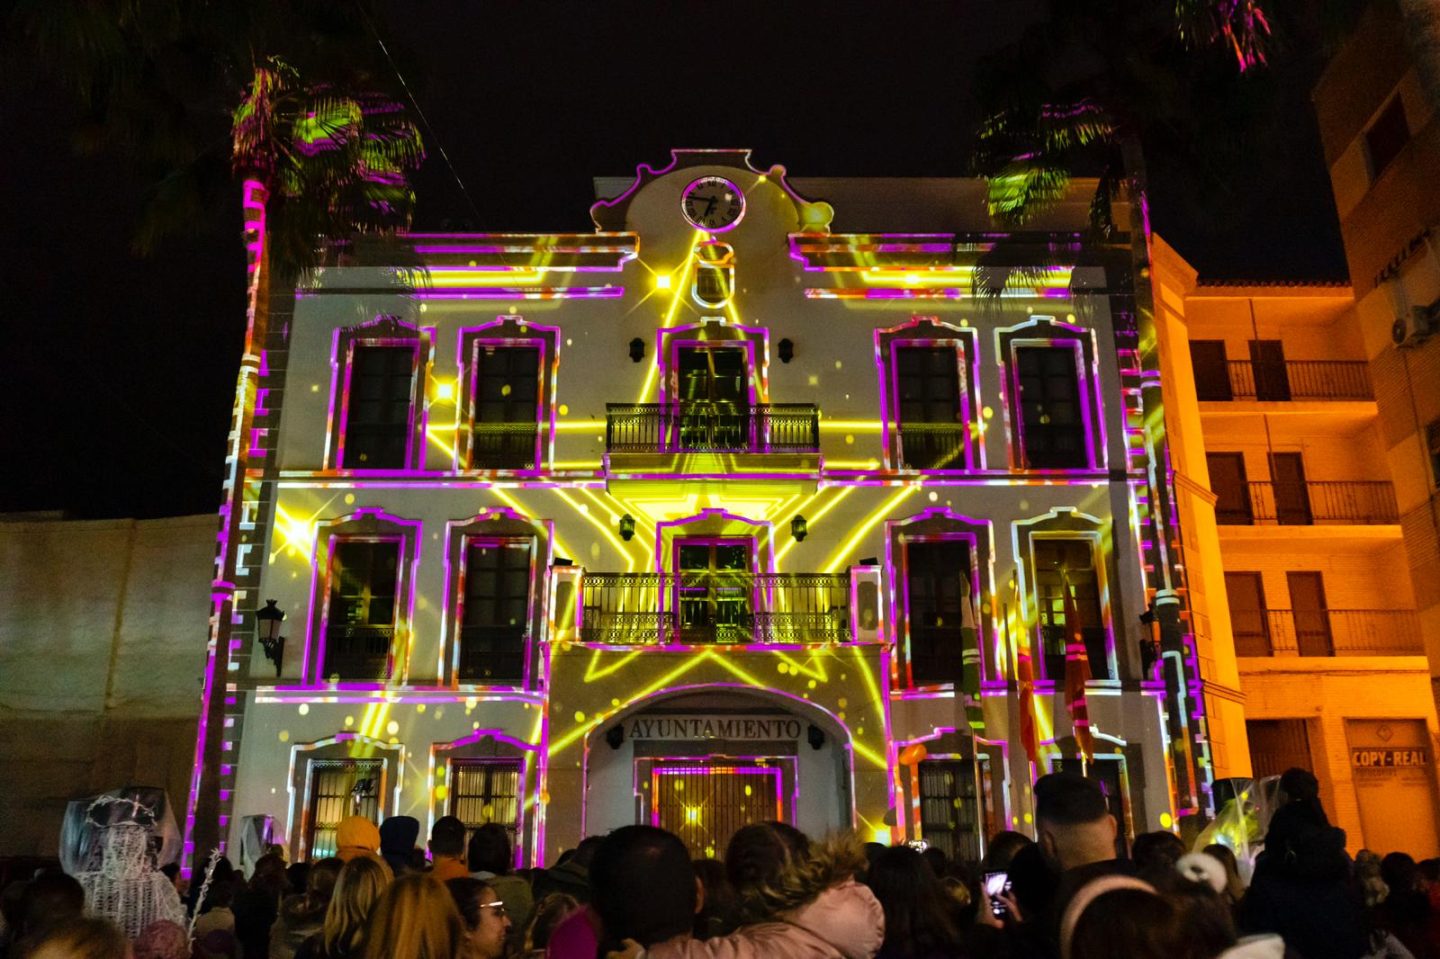 Adra recibe la Navidad con un ‘video mapping’ de luces de colores en la fachada del Ayuntamiento